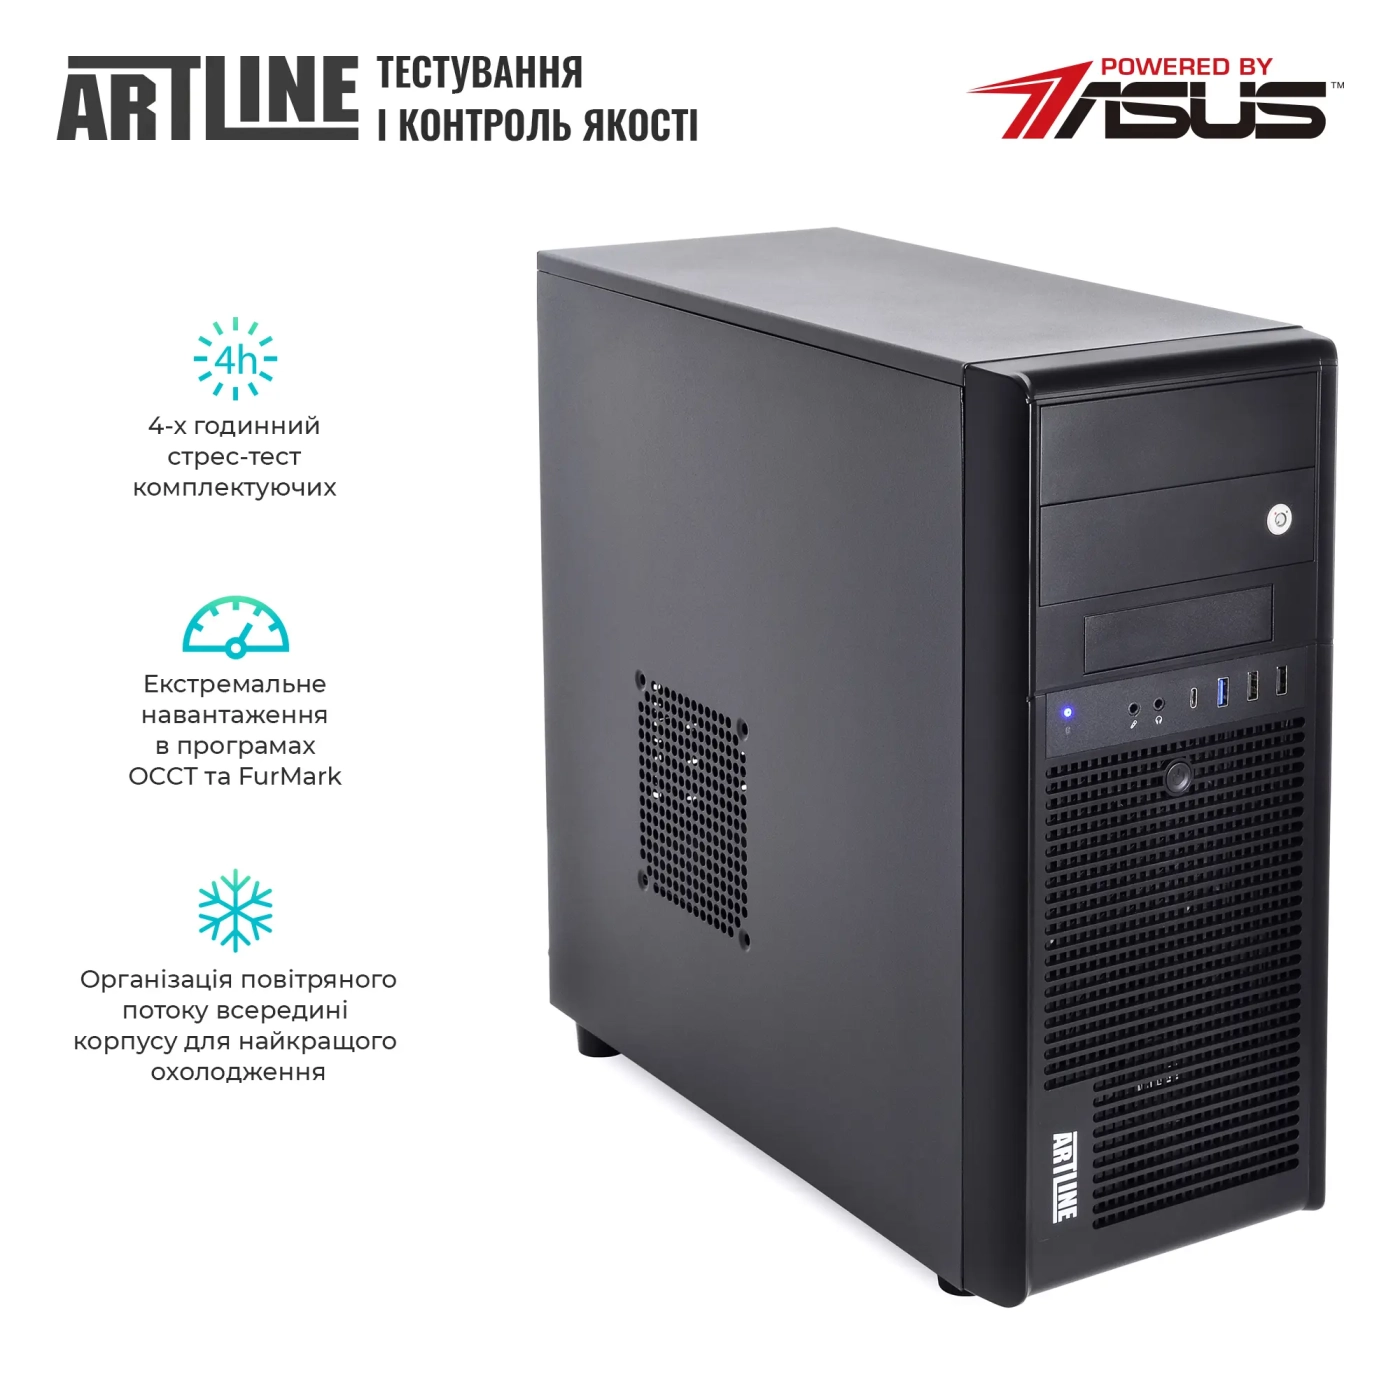 Купить Сервер ARTLINE Business T37v30 - фото 7